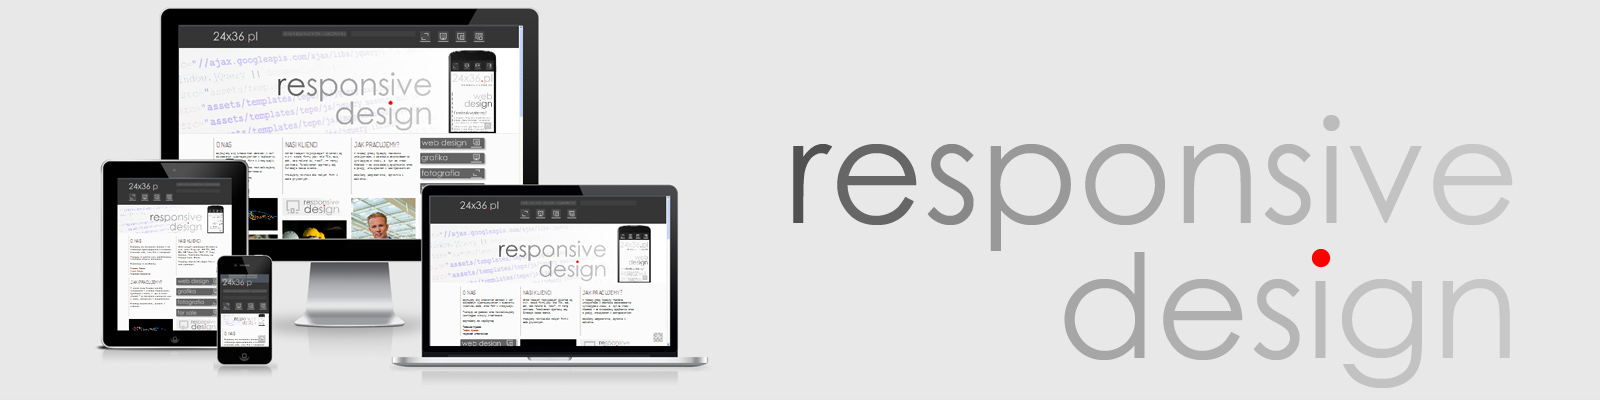 projektowanie budowa szablony responsive design projekty stron www witryny responsywne strony mobilne tanio solidnie